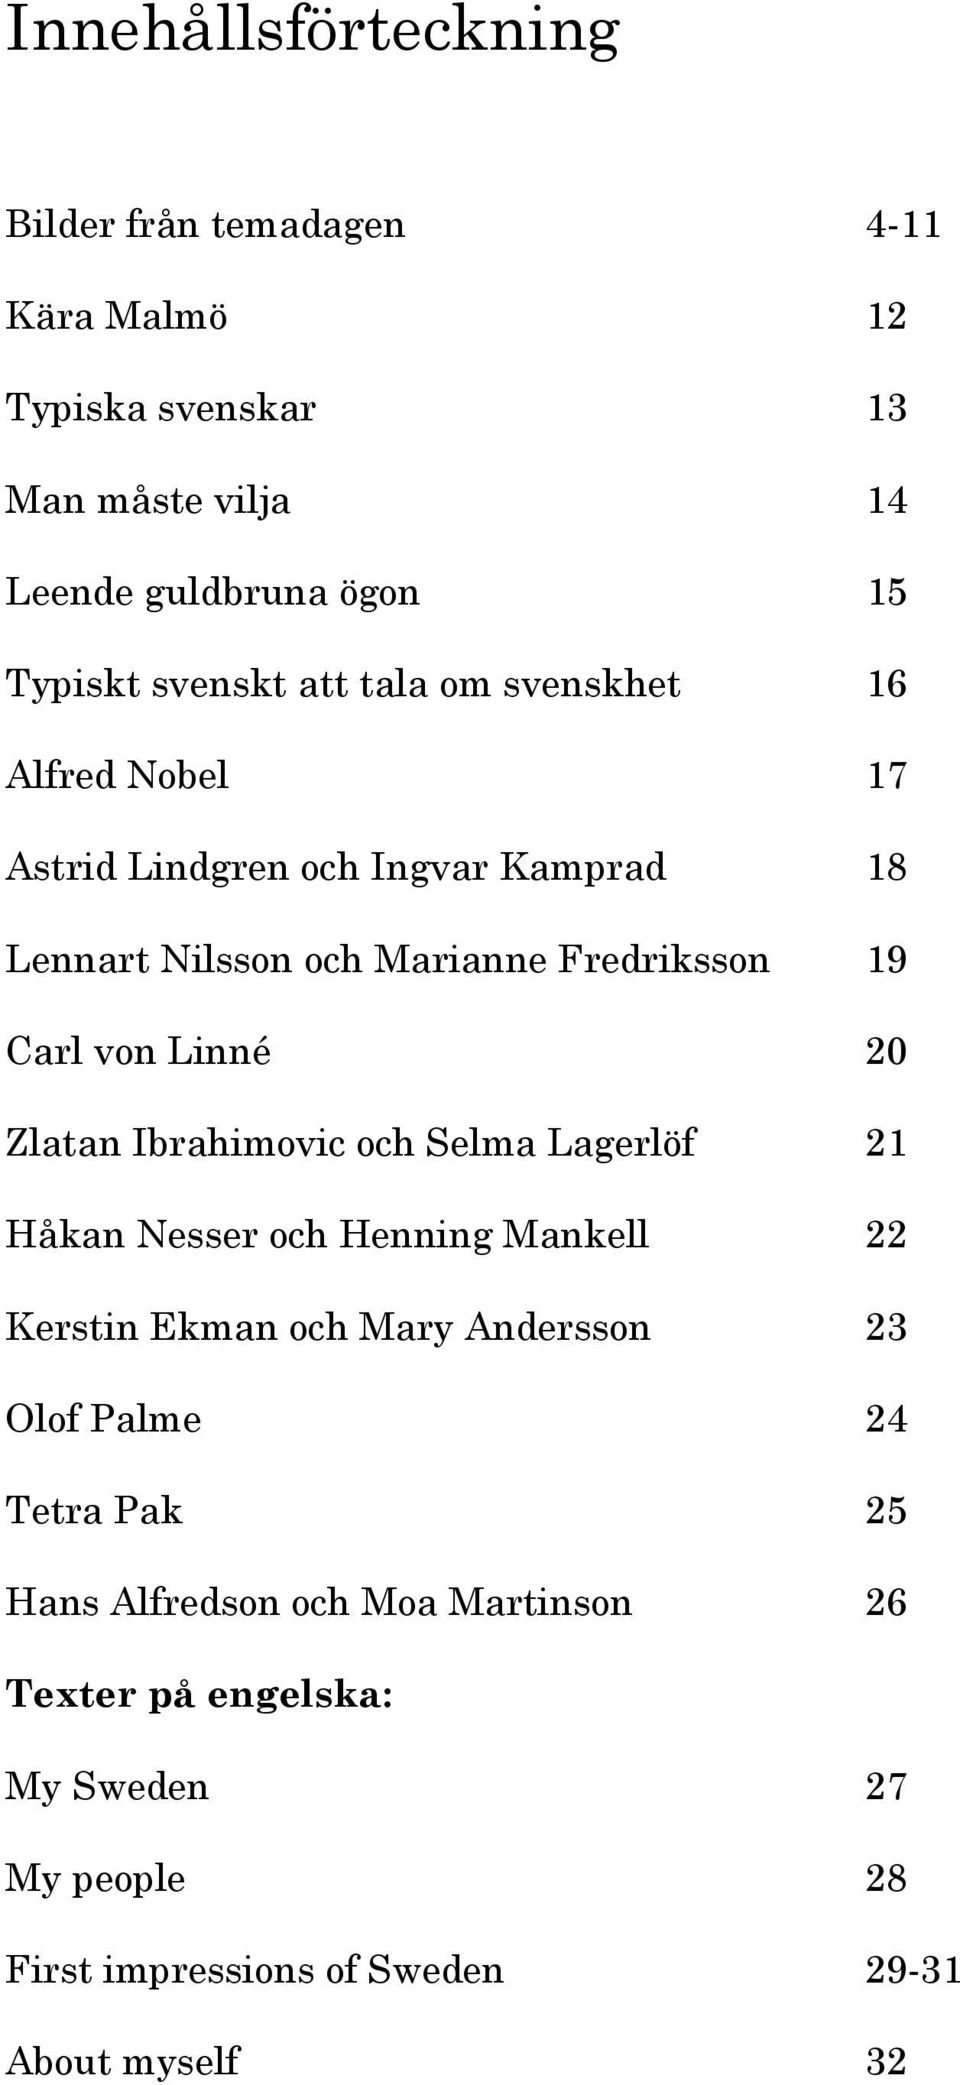 von Linné 20 Zlatan Ibrahimovic och Selma Lagerlöf 21 Håkan Nesser och Henning Mankell 22 Kerstin Ekman och Mary Andersson 23 Olof Palme